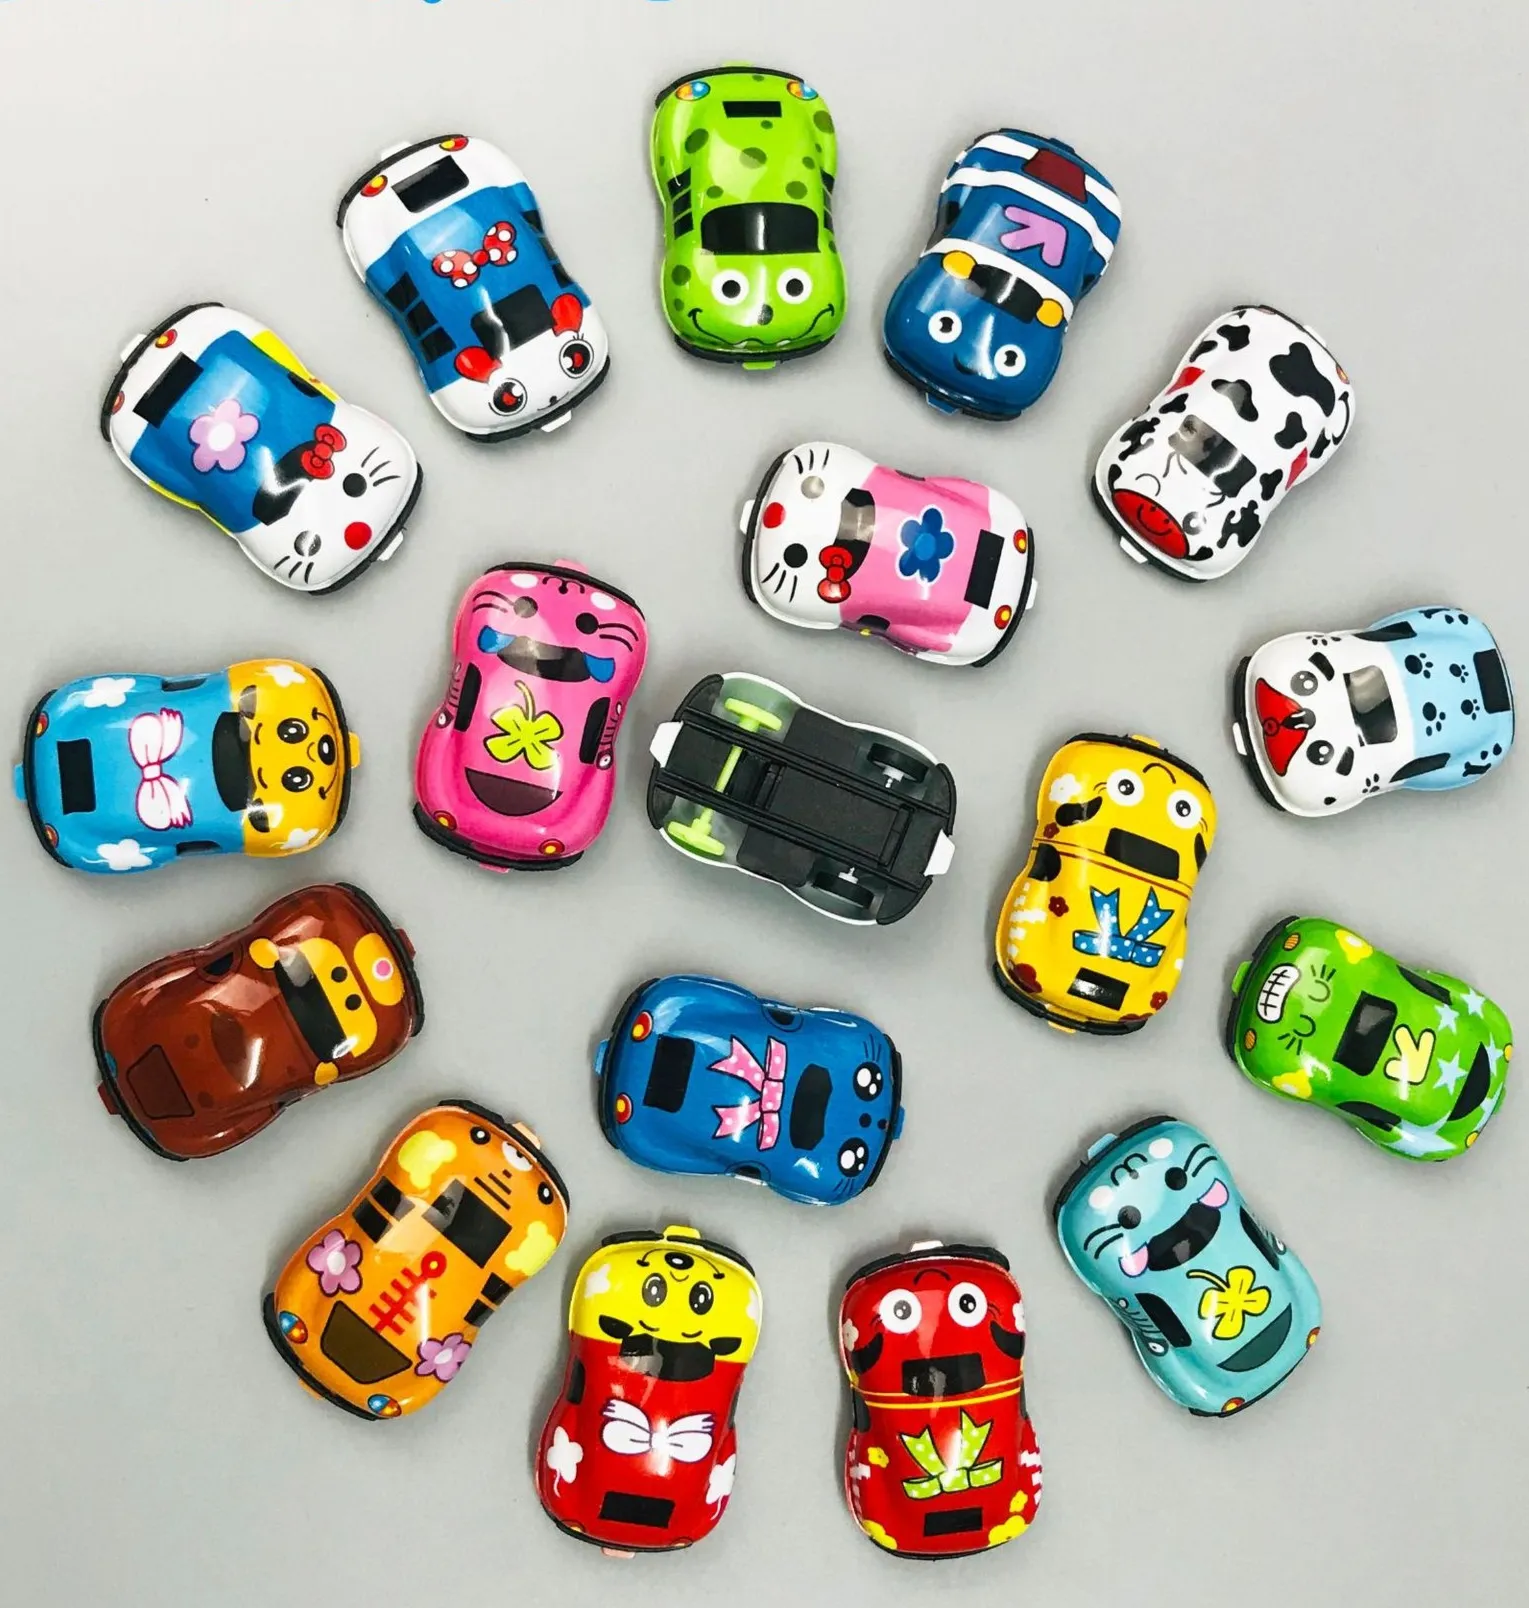 2021 High quality mini plastic graffiti vehicle pull back car toys for kids